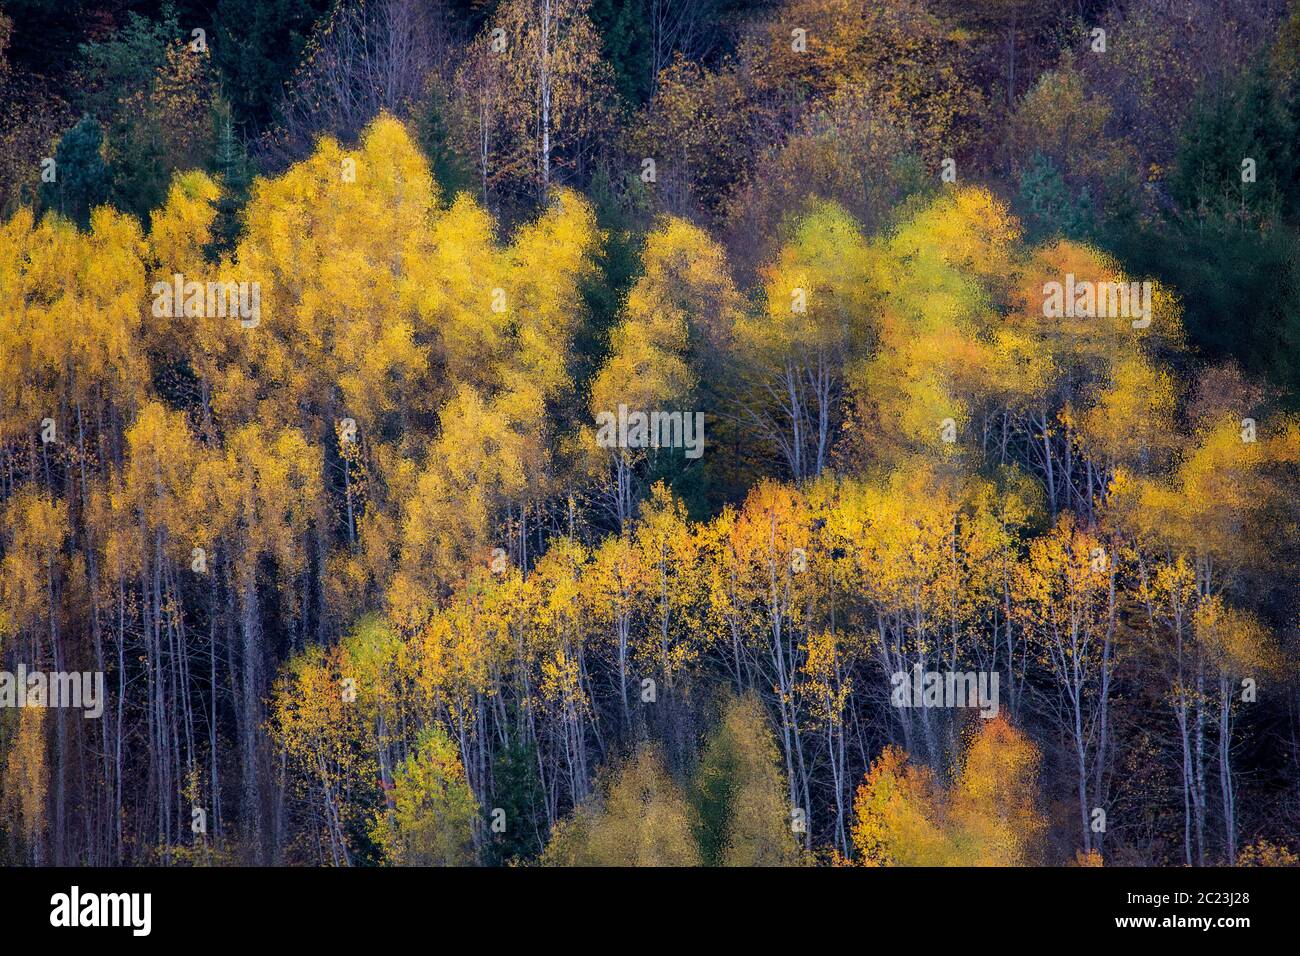 Couleurs d'automne dans les montagnes du Caucase, Géorgie Banque D'Images